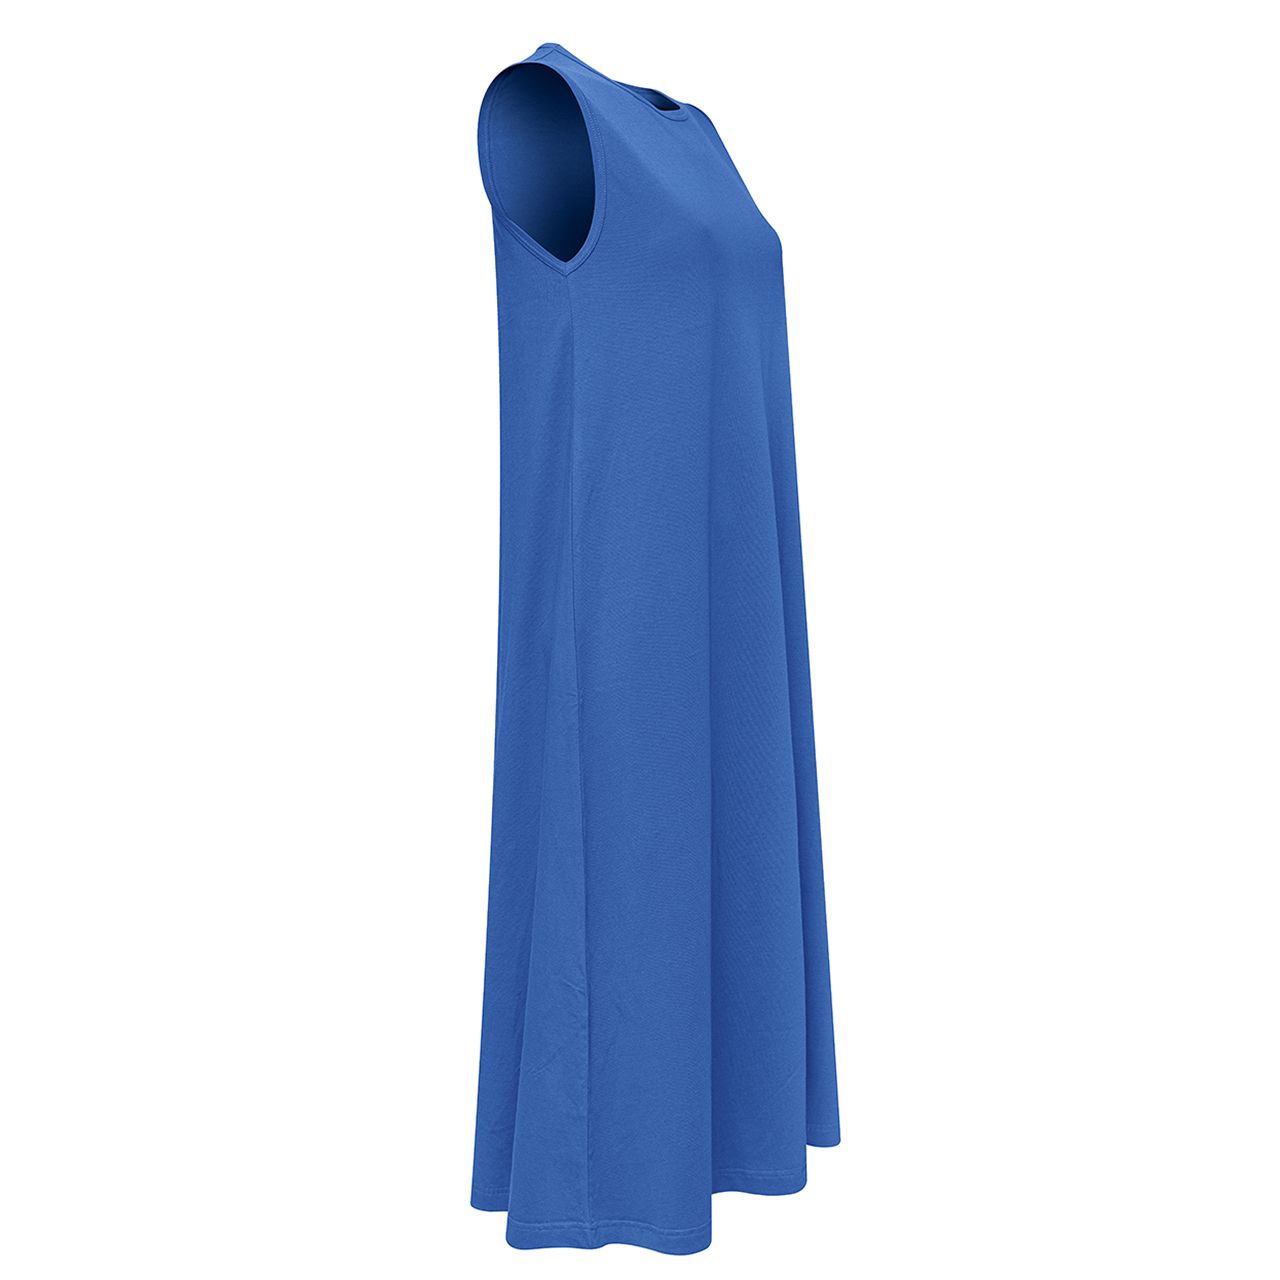 پیراهن زنانه ساروک مدل PRZBO کد 04 رنگ آبی -  - 2